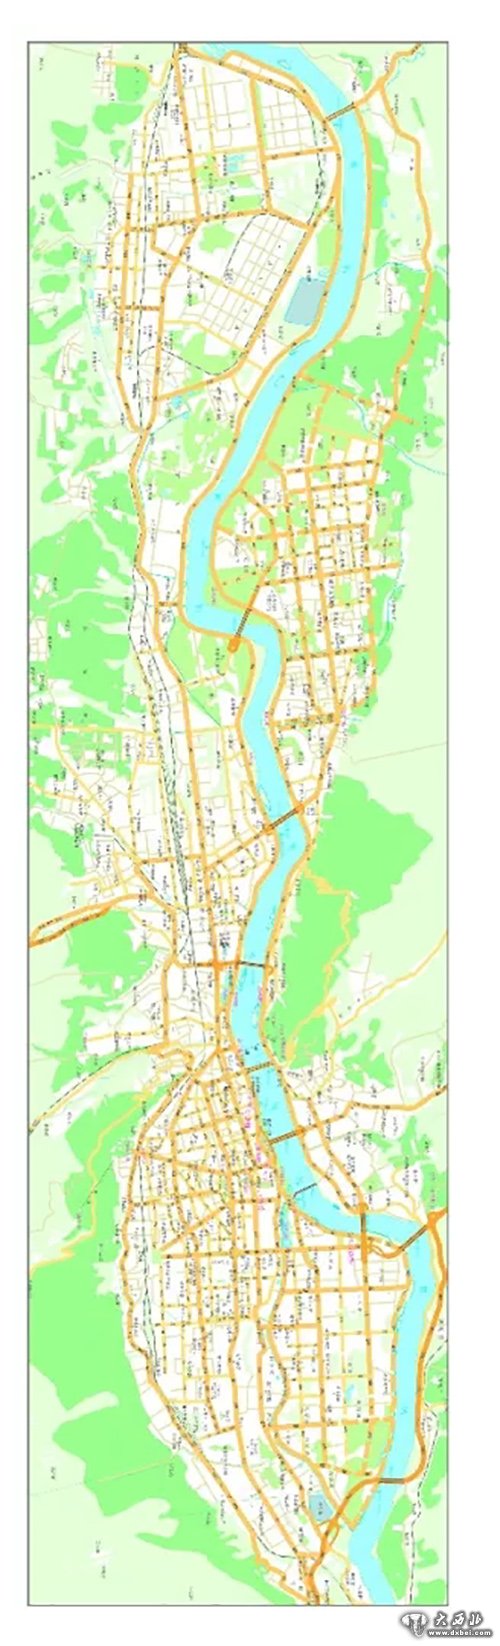 2007年兰州市城区图      资料来源:甘肃省地图院(2007年编制)